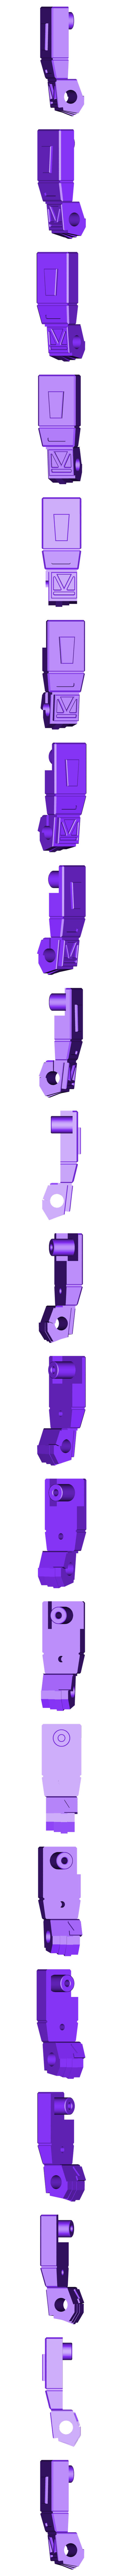 arm_v1__L_01.stl Download free STL file TRANSFORMERS G1 ROTORSTORM ARTICULATION UPGRADE KIT • 3D printer object, sickofyou